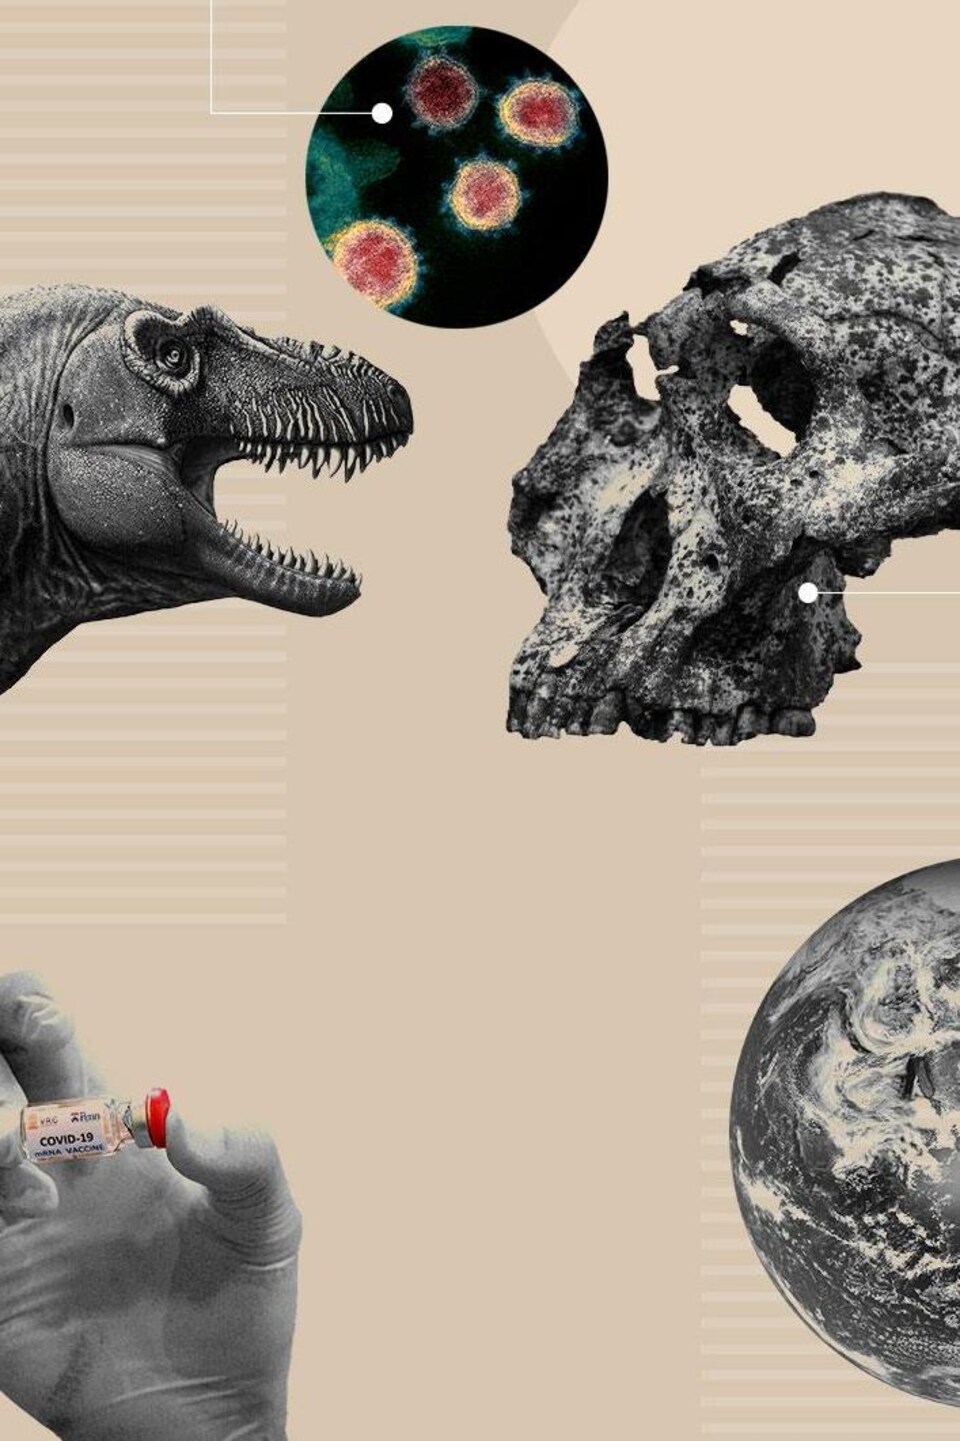 Un dinosaure, un crâne, la Terre et une fiole contenant le vaccin contre la COVID-19 représentent certains des événements scientifiques de l'année.